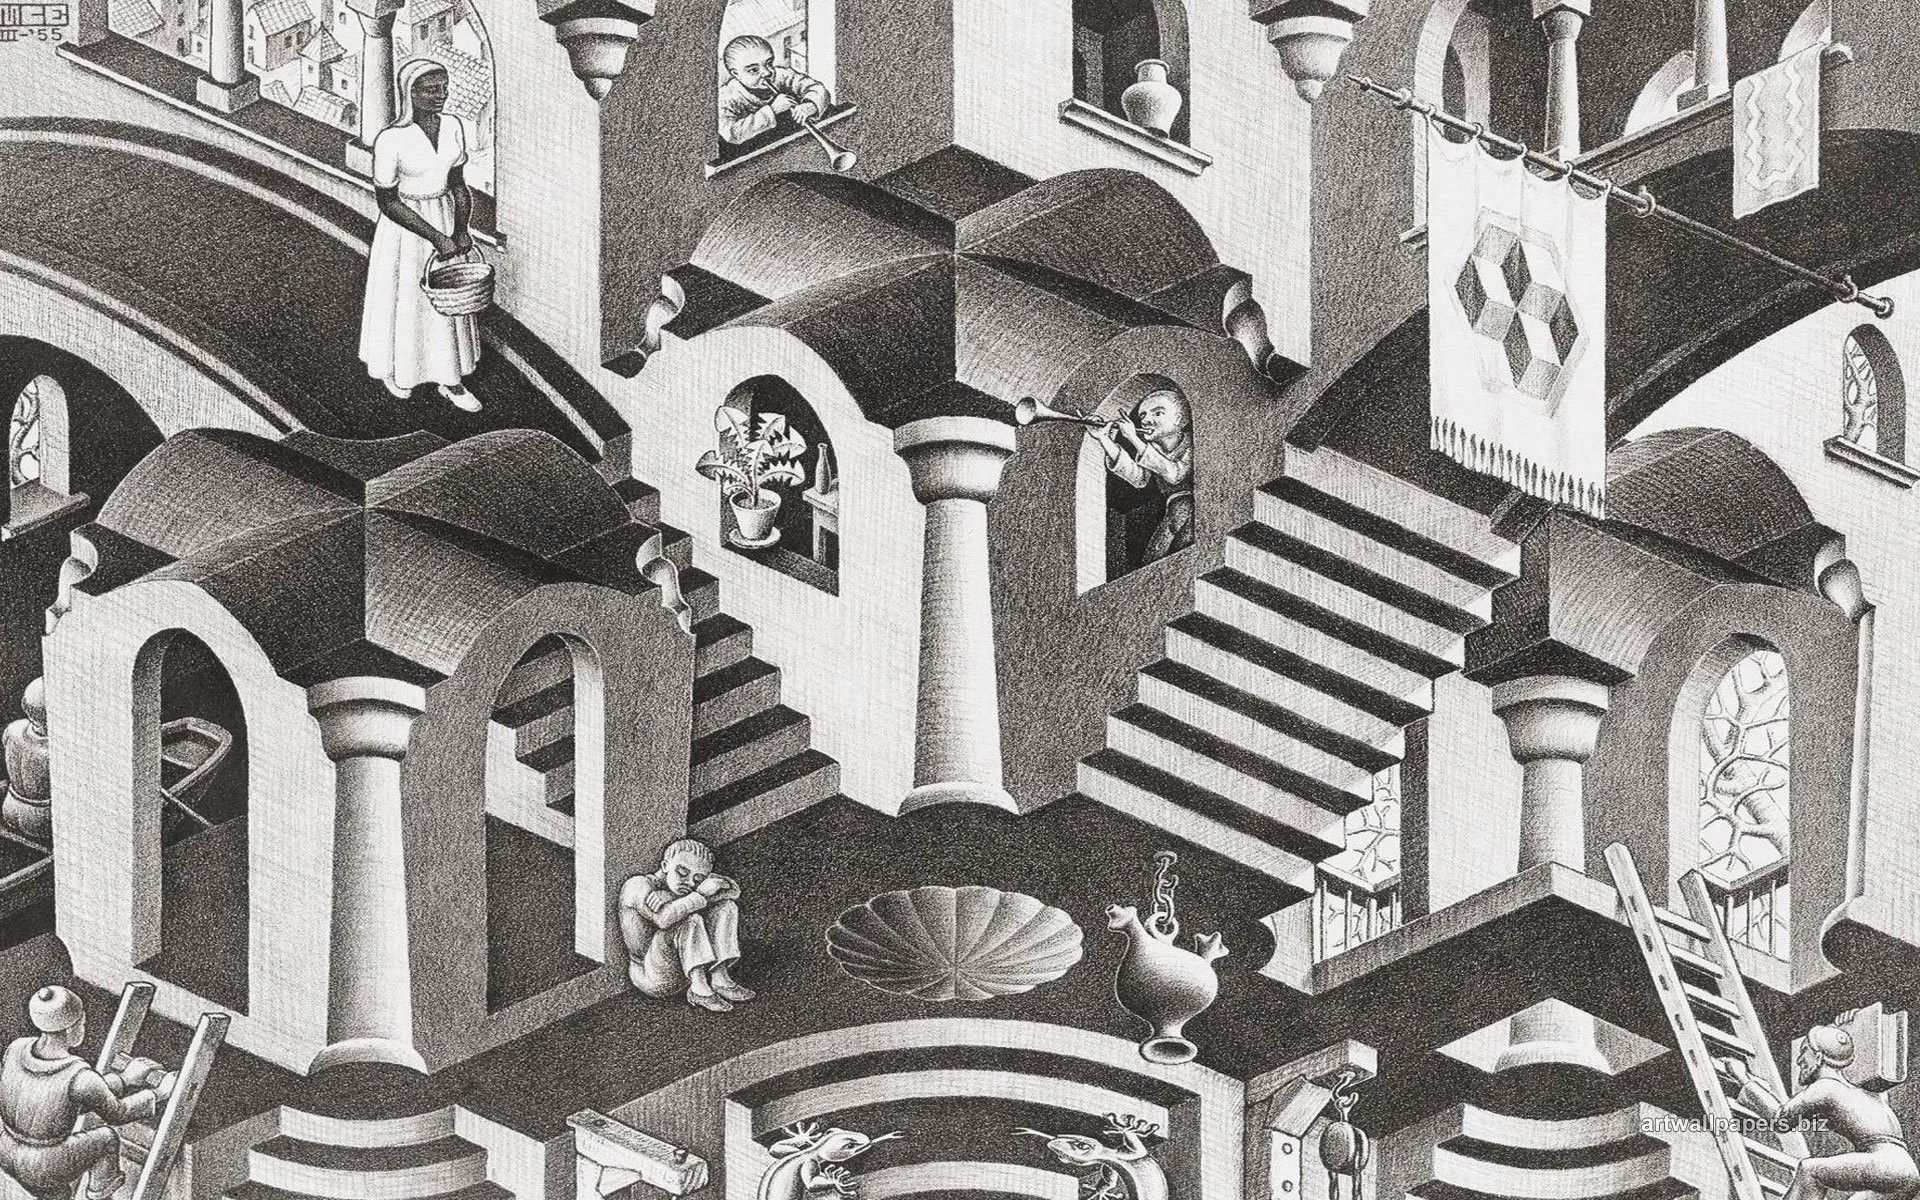 M.C. Escher, Other artist, Escher wallpapers, Graphic art, 1920x1200 HD Desktop